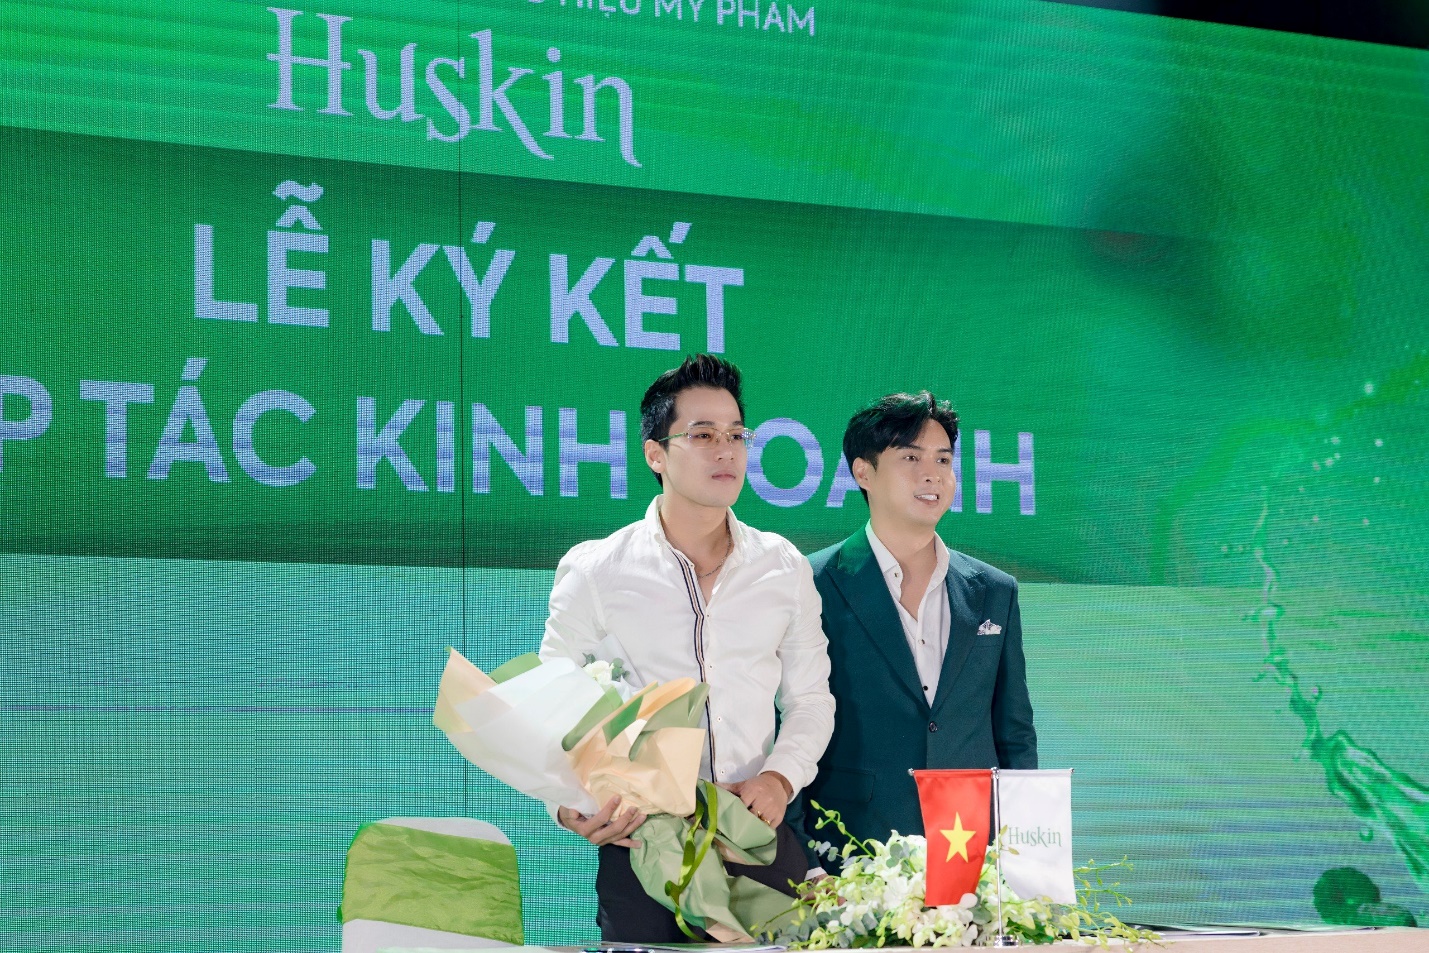 Vợ chồng Hồ Quang Hiếu ra mắt thương hiệu mỹ phẩm Huskin - Ảnh 3.